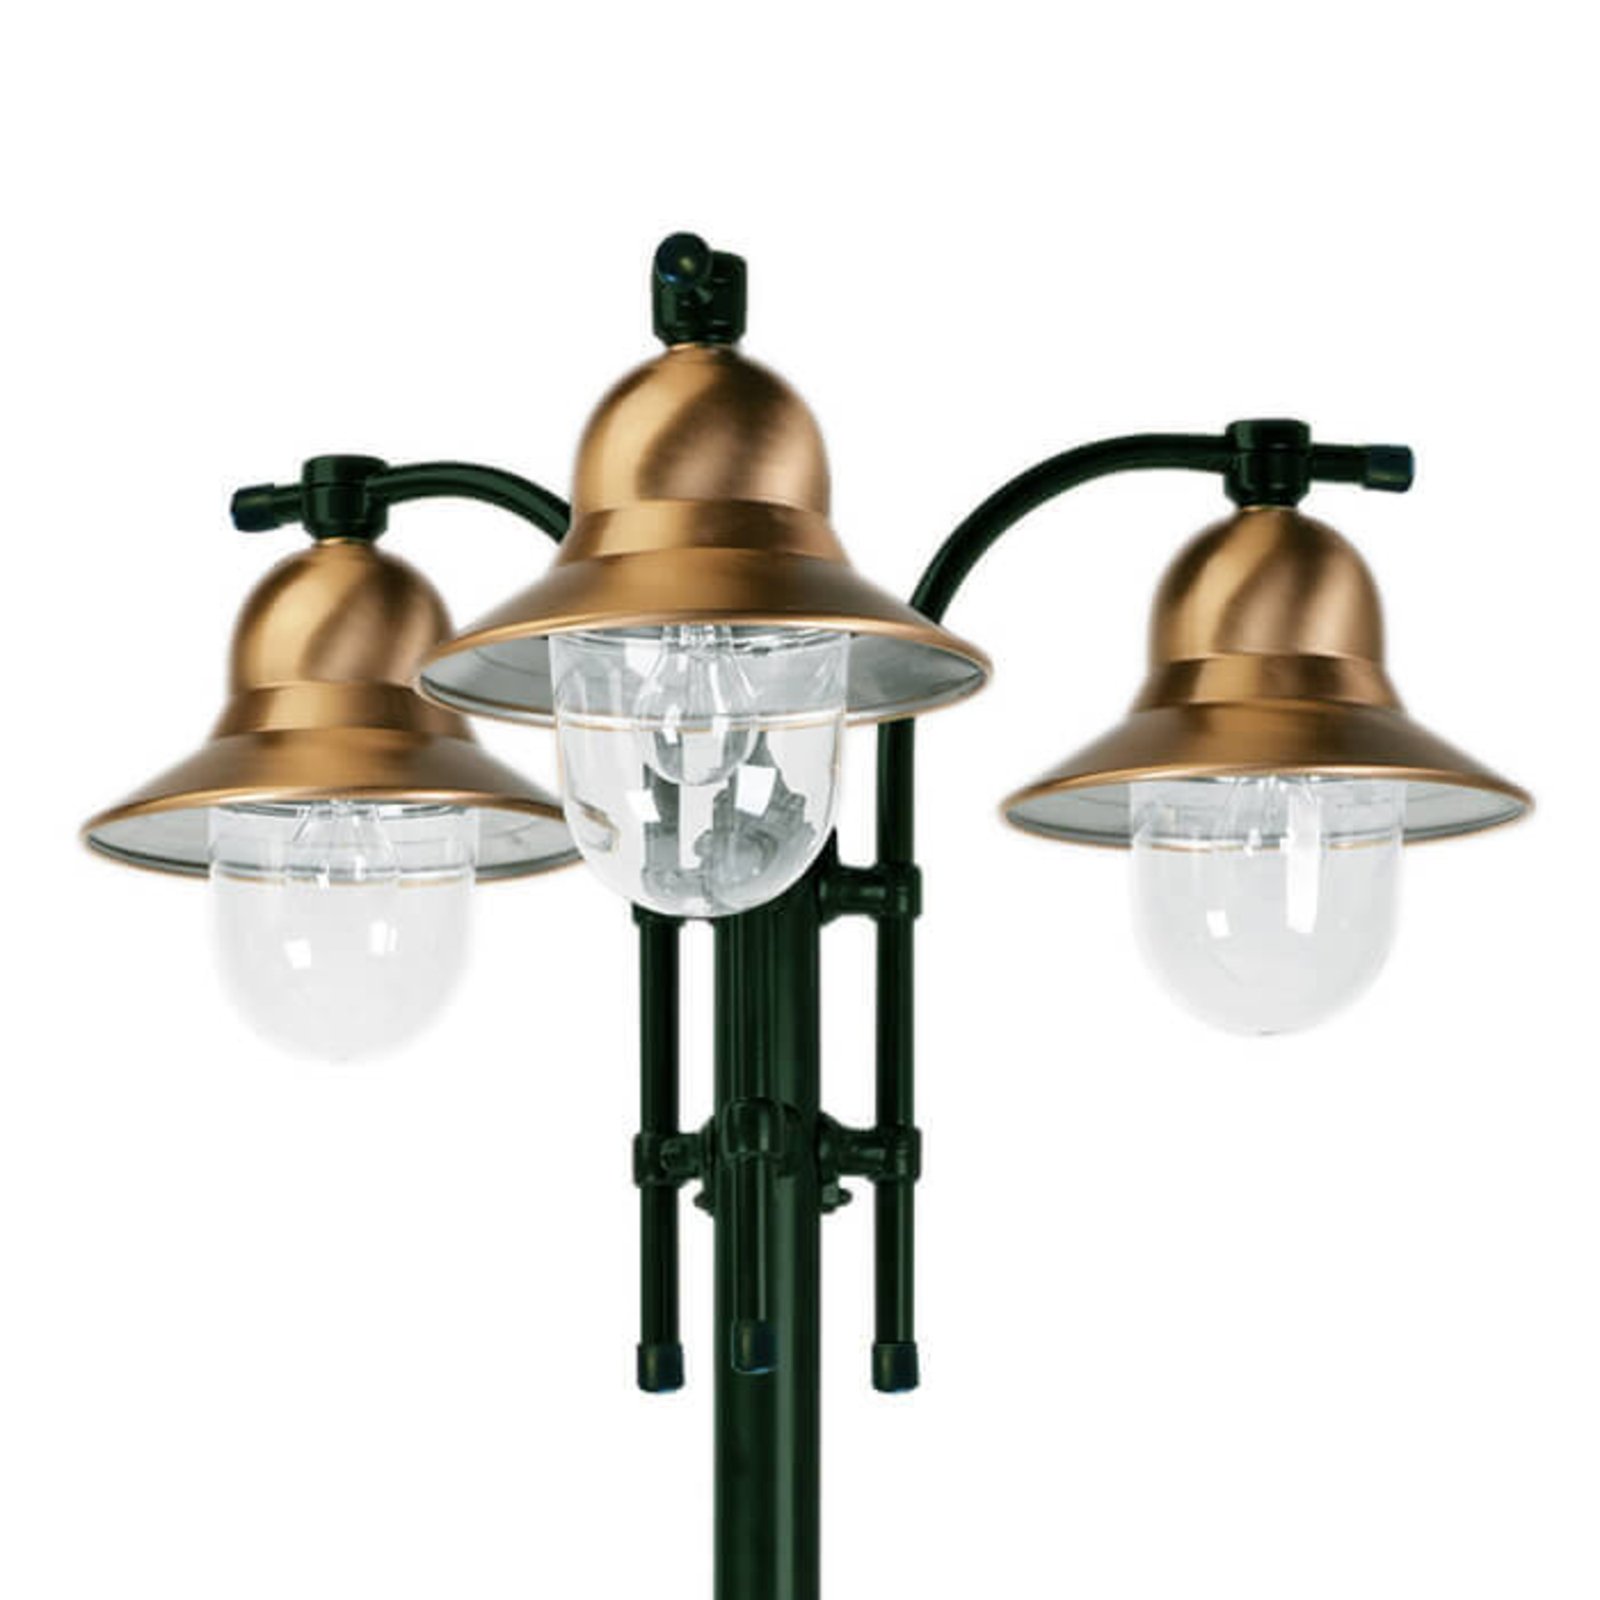 3-lámpás oszloplámpa Toscane, zöld